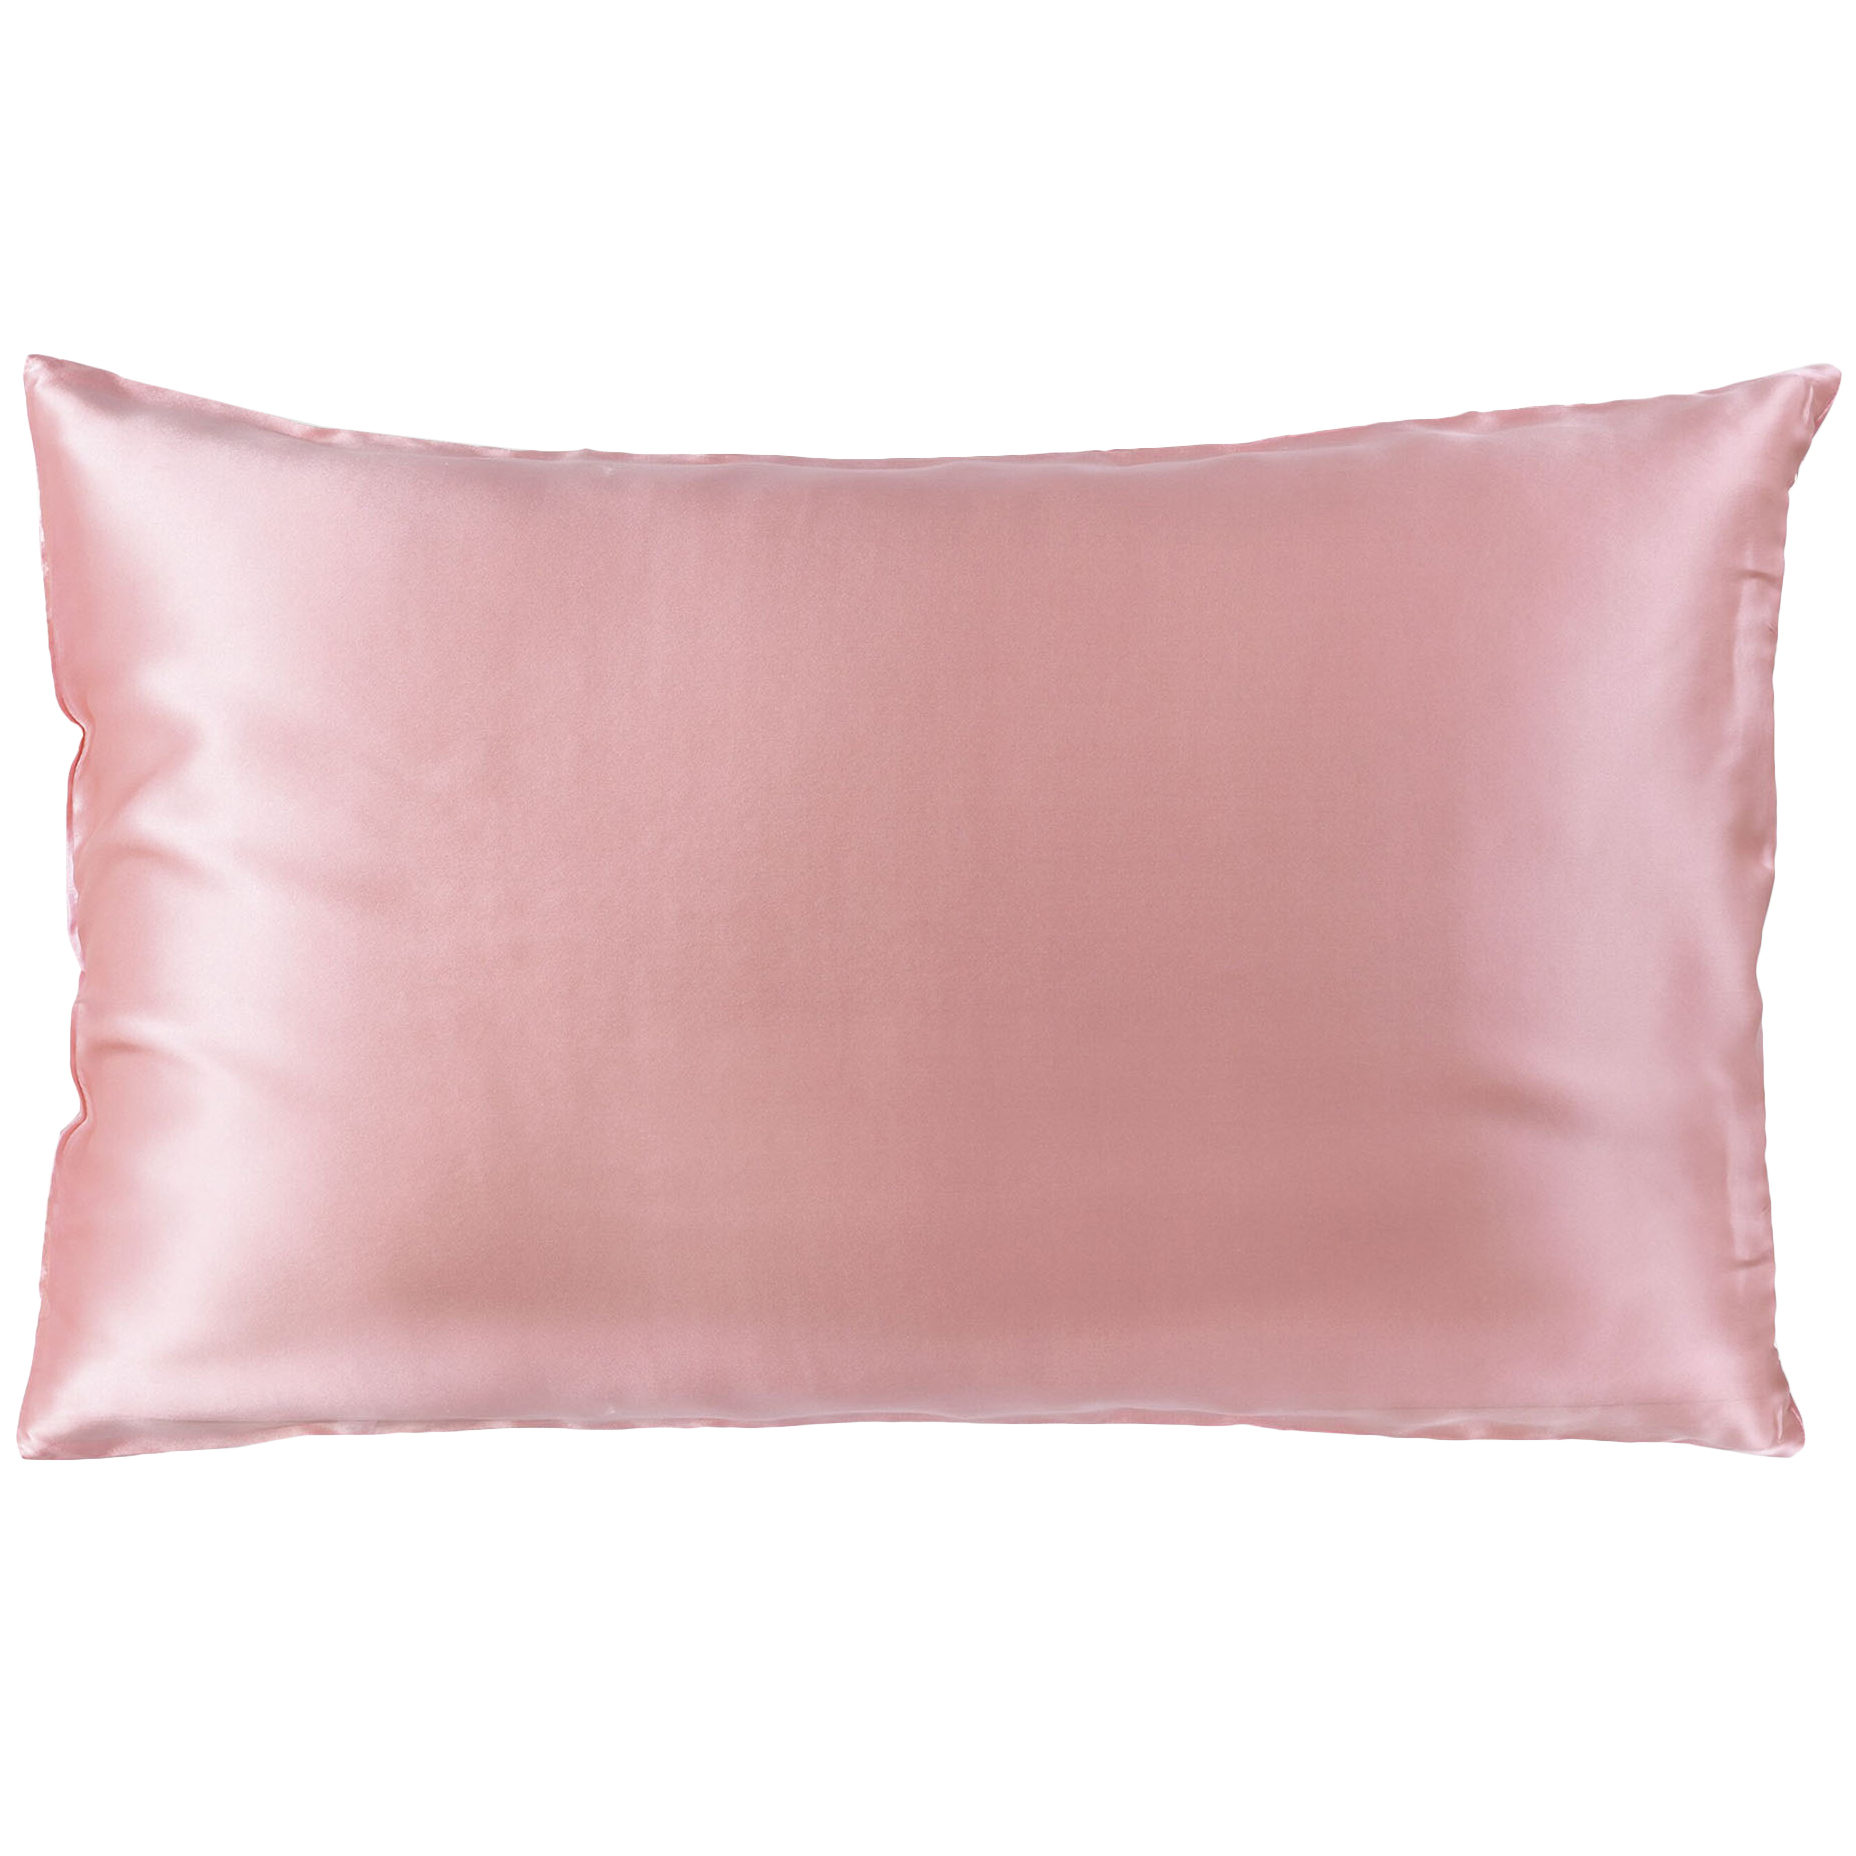 silk pillowcase afterpay